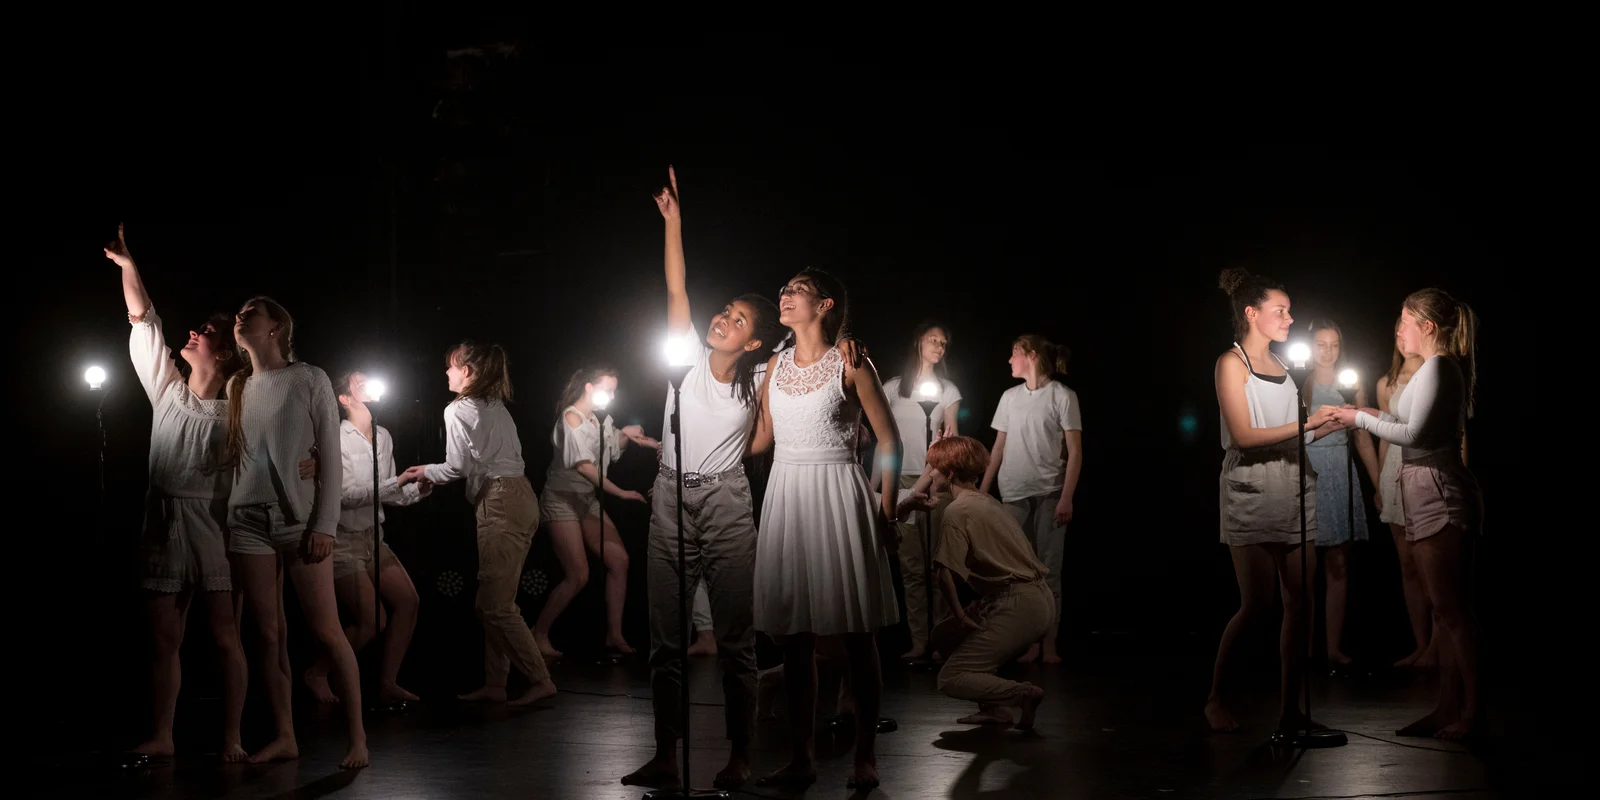 Auf einer abgedunkelten Bühne leuchten kleine weiße Lampen auf Ständern. Schülerinnen des Otto Hahn Gymnasiums sind in Zweierpärchen mit weißen T-Shirt und beigen Hosen oder weisen Kleidern zu sehen. Sie gucken sich gegenseitig in die Augen und halten sich an den Händen. zwei Schülerinnen zeigen mit dem Finger nach oben